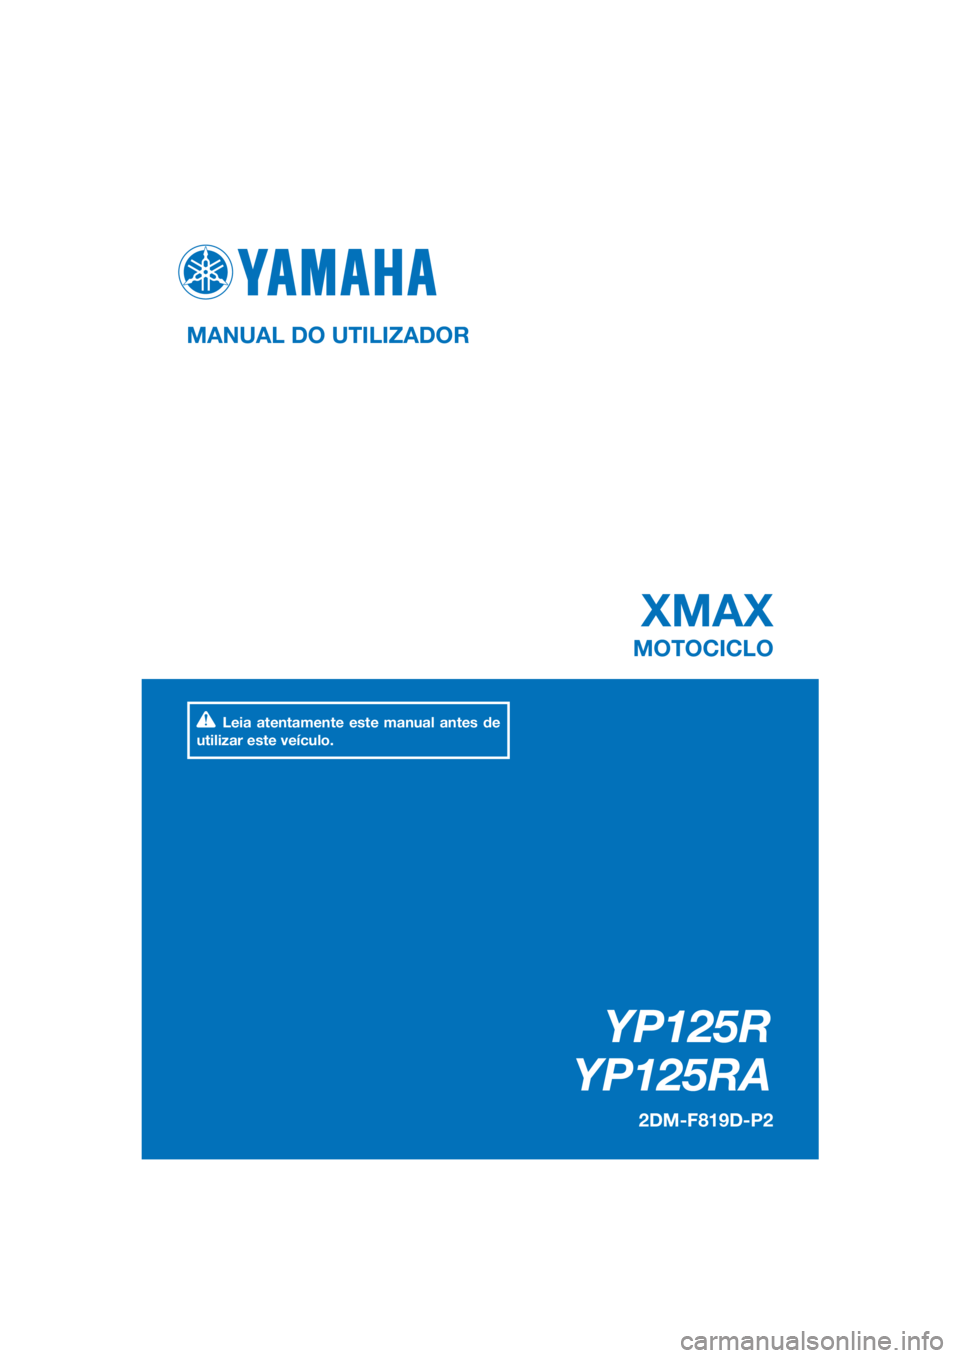 YAMAHA XMAX 125 2016  Manual de utilização (in Portuguese) PANTONE285C
YP125R
YP125RA
XMAX
MANUAL DO UTILIZADOR
2DM-F819D-P2
MOTOCICLO
Leia atentamente este manual antes de 
utilizar este veículo.
[Portuguese  (P)] 